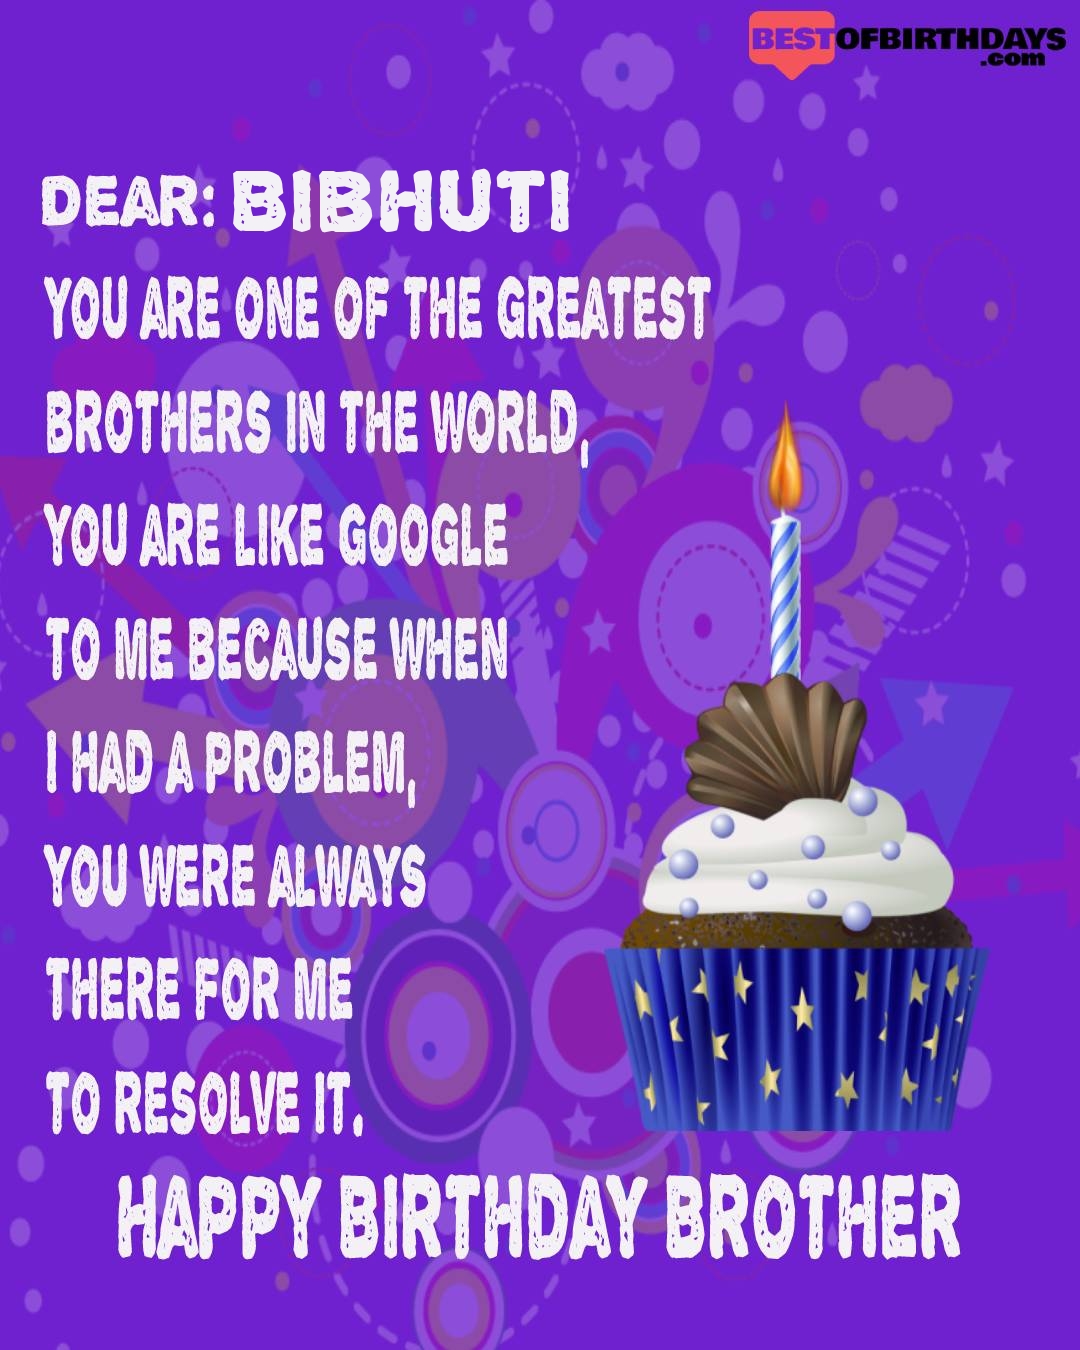 Happy birthday bibhuti bhai brother bro